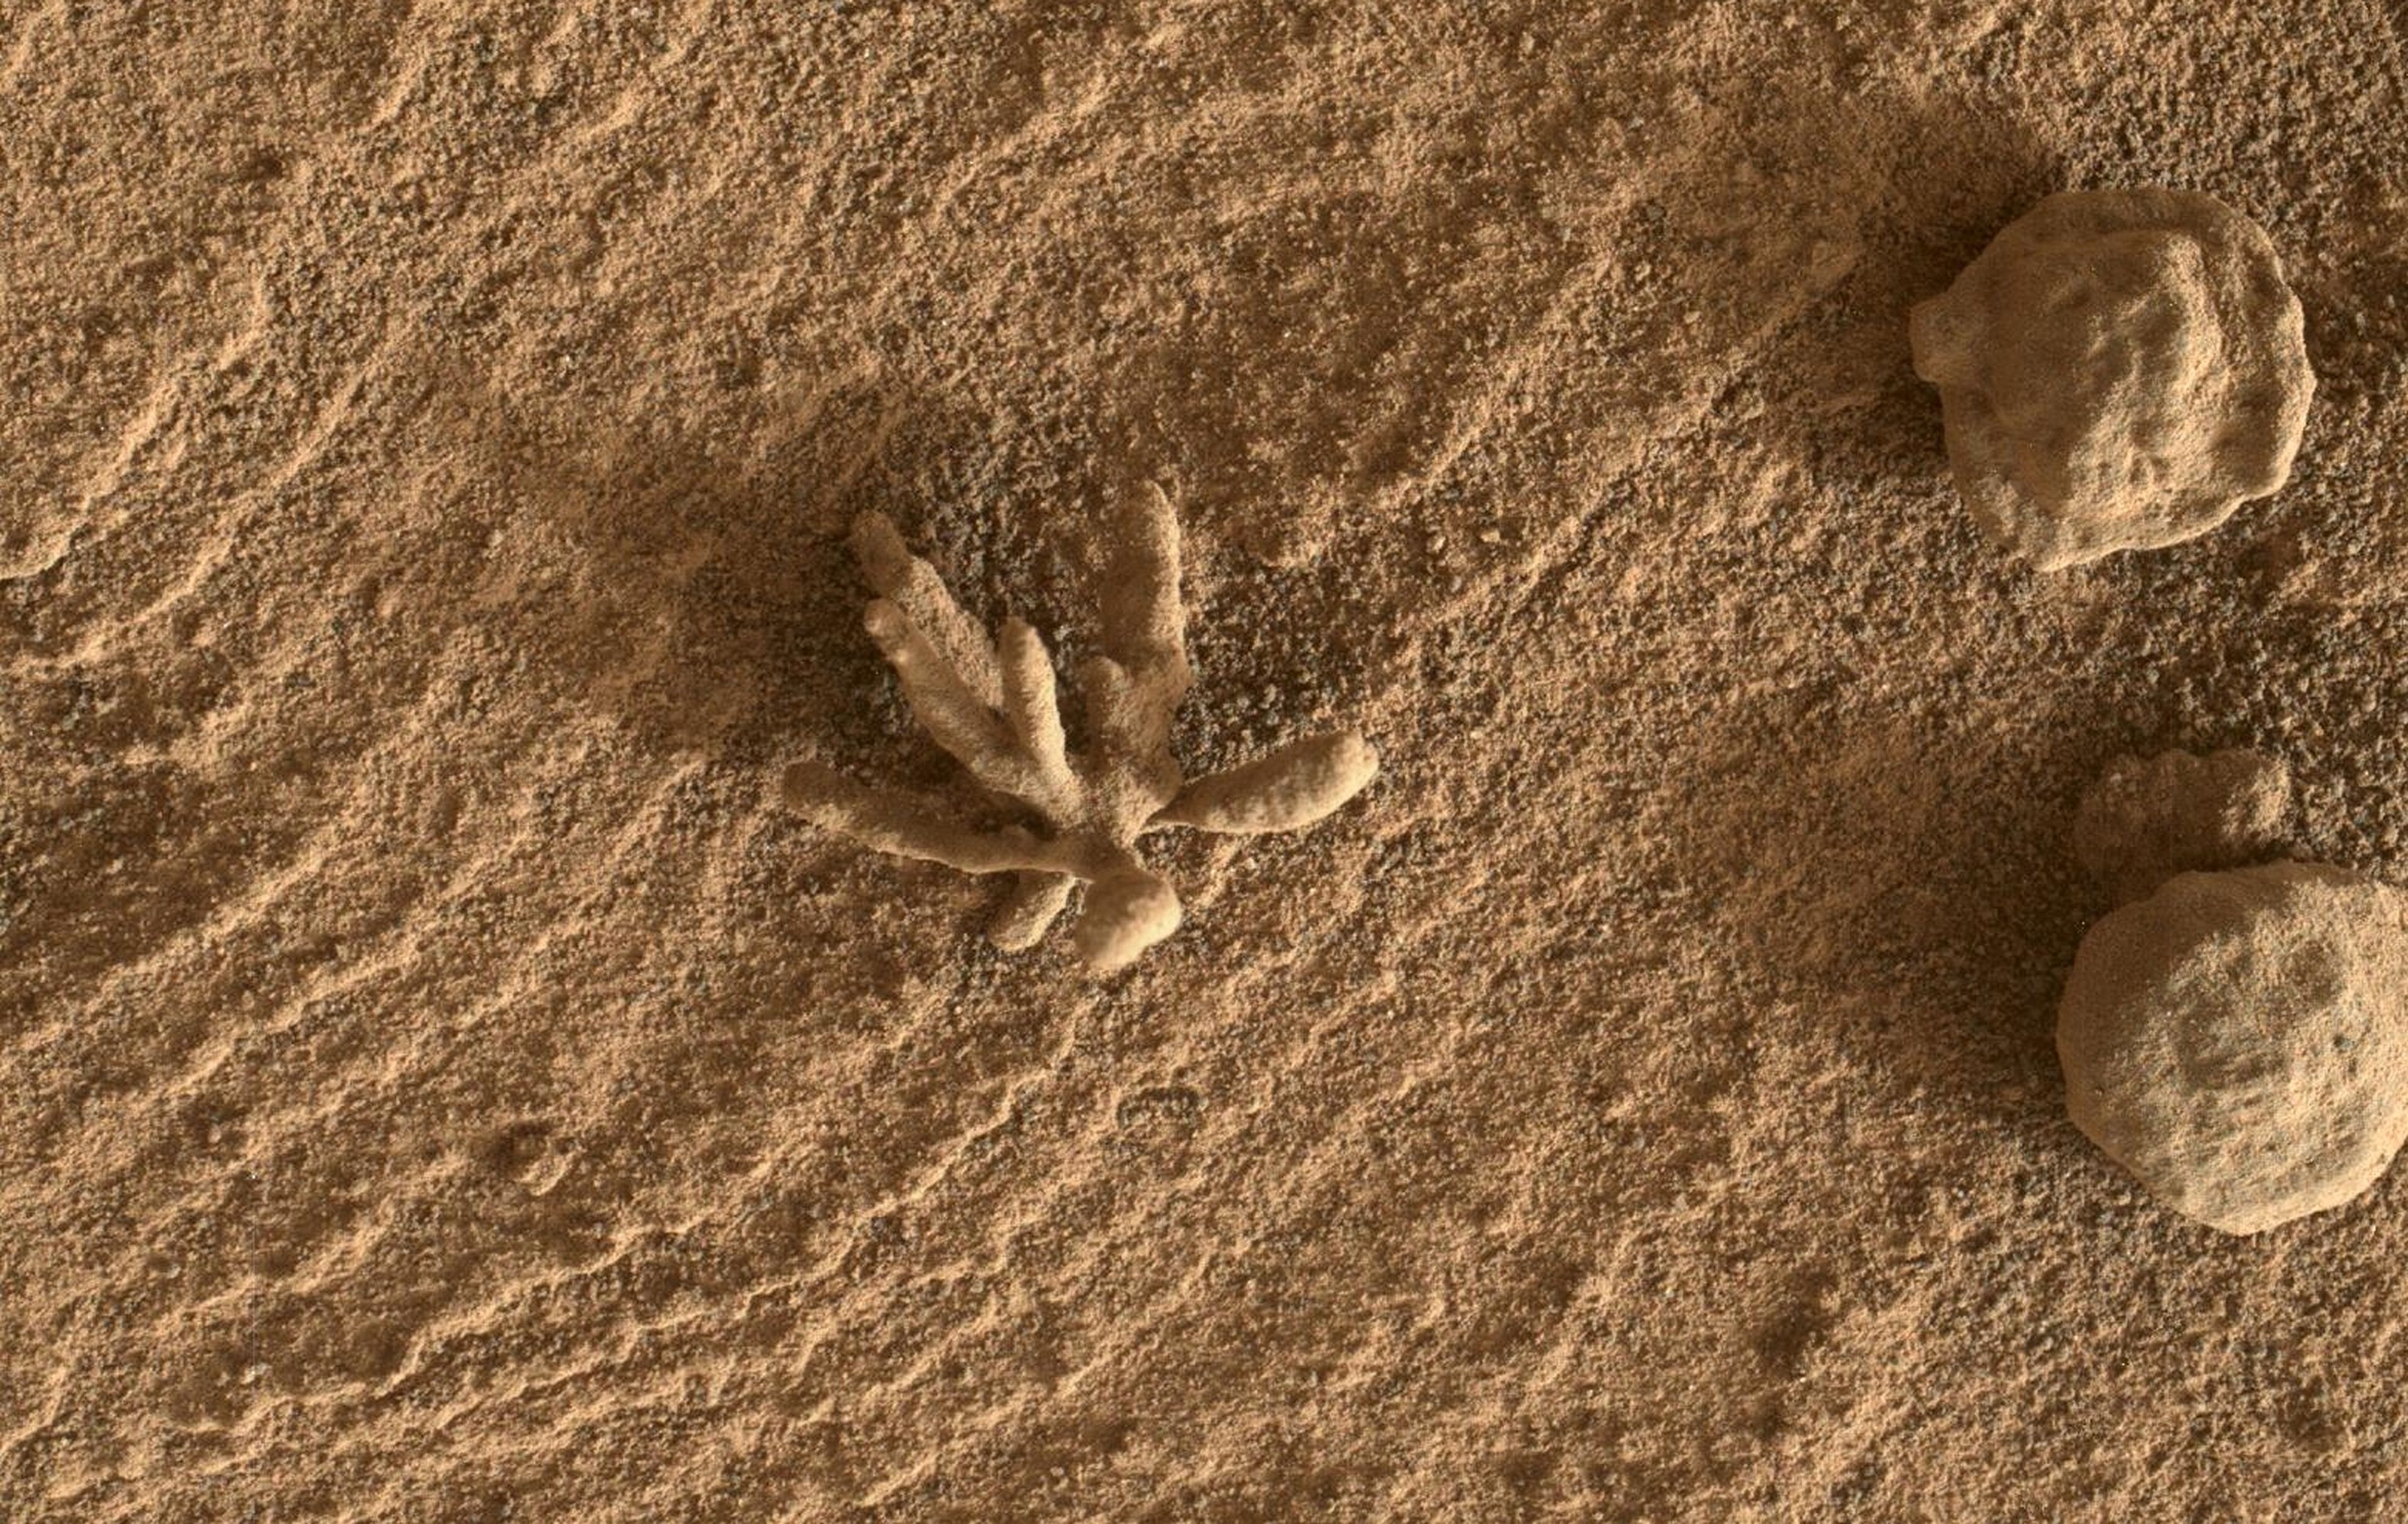 La "flor" encontrada en Marte es una bonita metáfora de la búsqueda incansable del ser humano